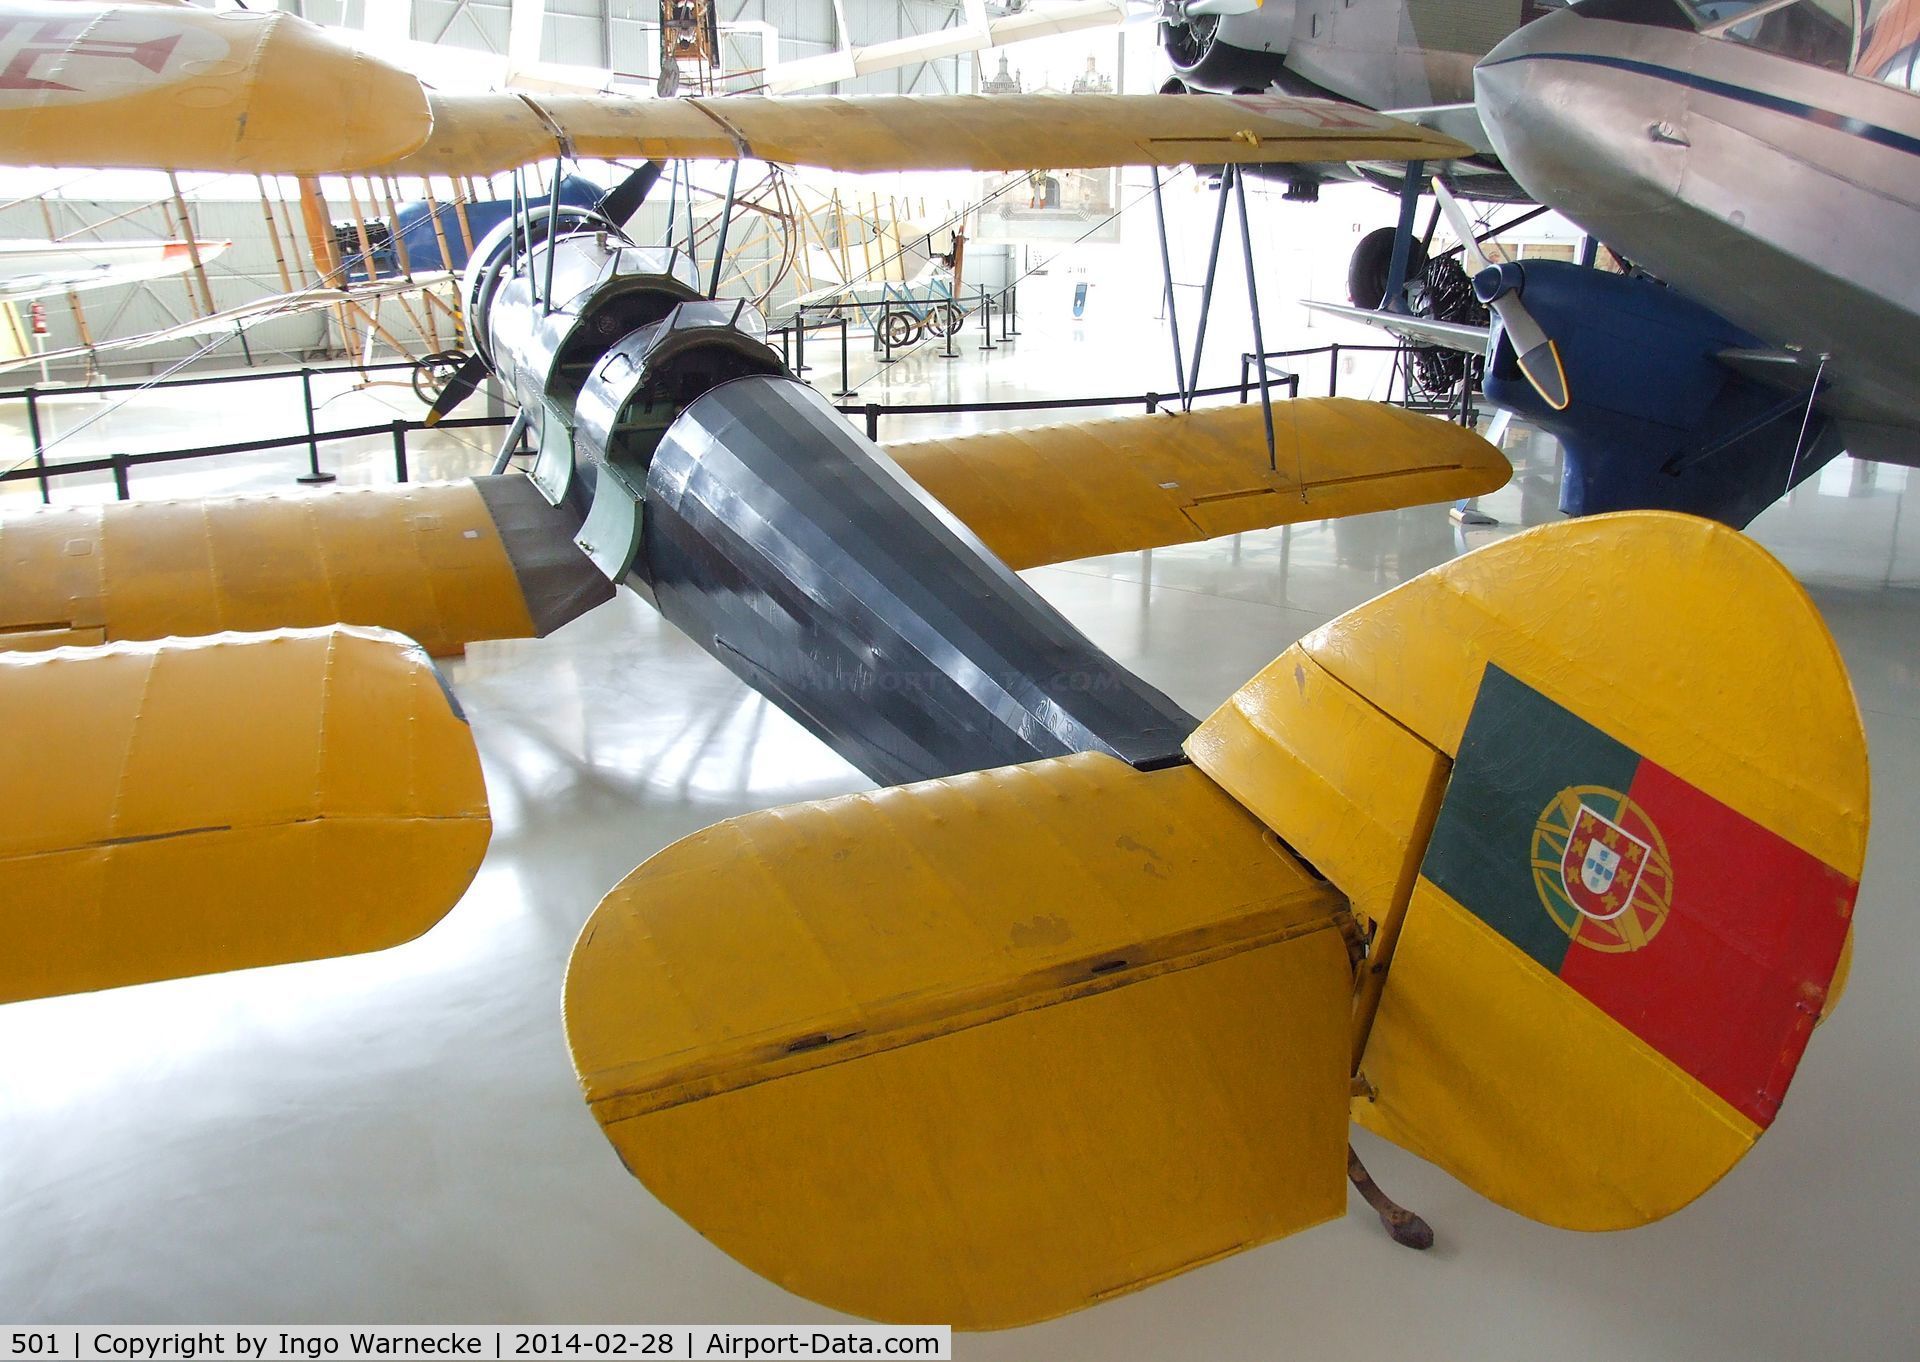 501, Avro 631 Cadet C/N 727, Avro 631 Cadet at the Museu do Ar, Sintra